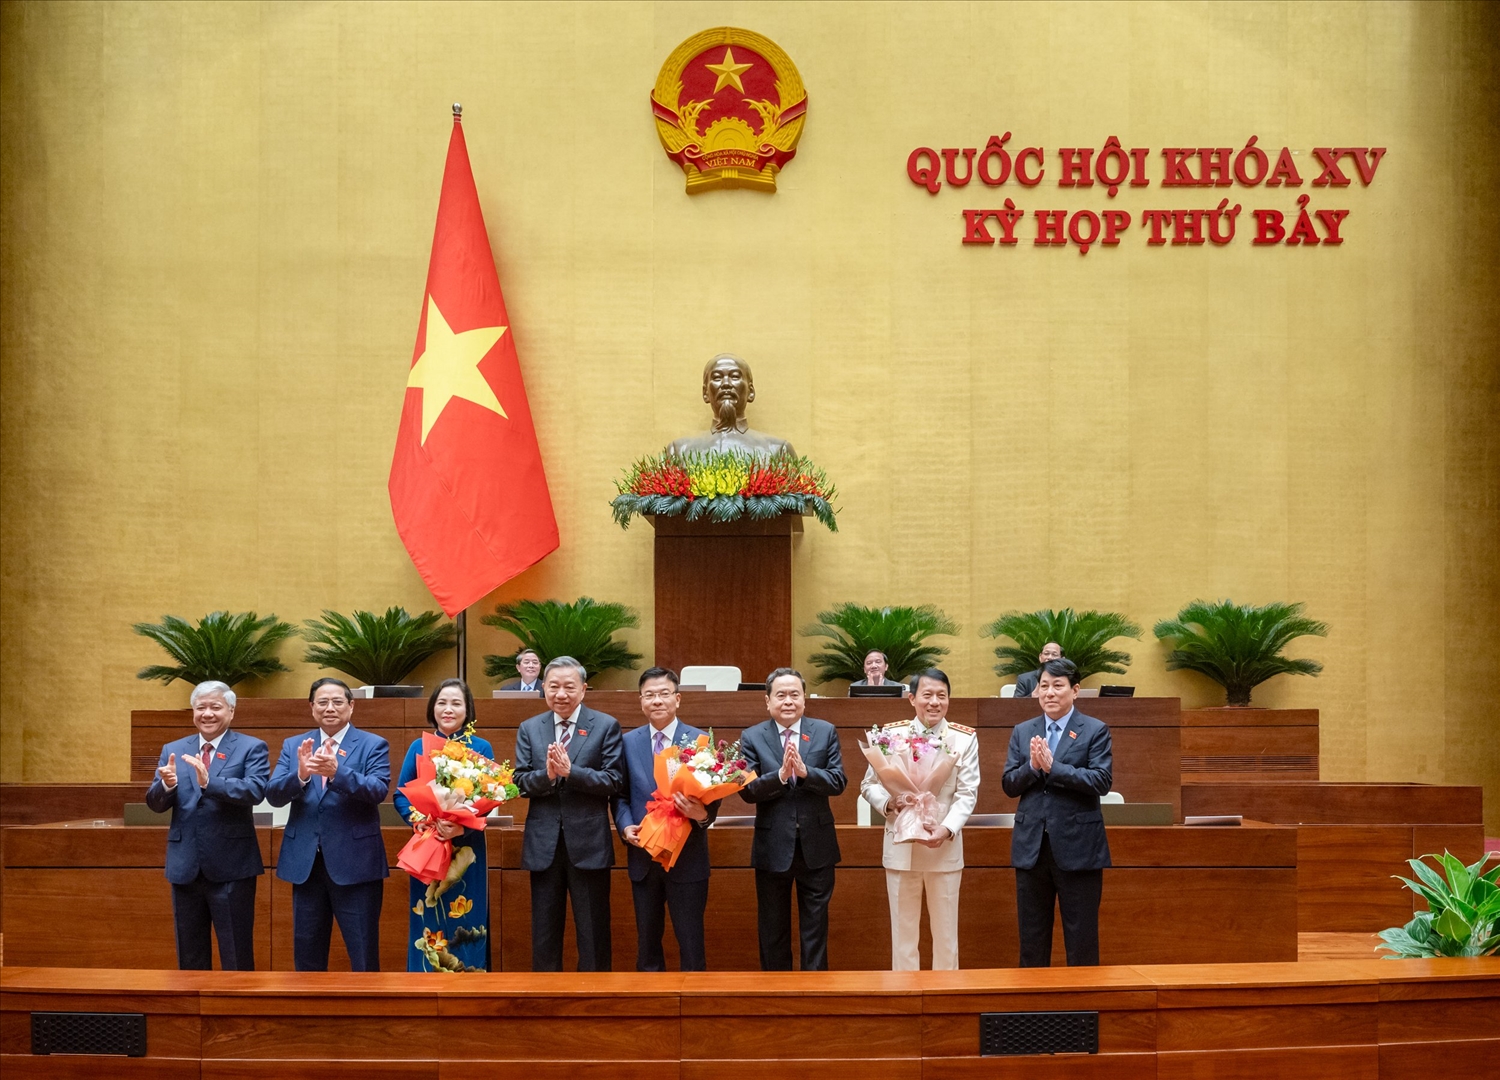 Lãnh đạo Đảng, Nhà nước tặng hoa chúc mừng các đồng chí mới được bổ nhiệm